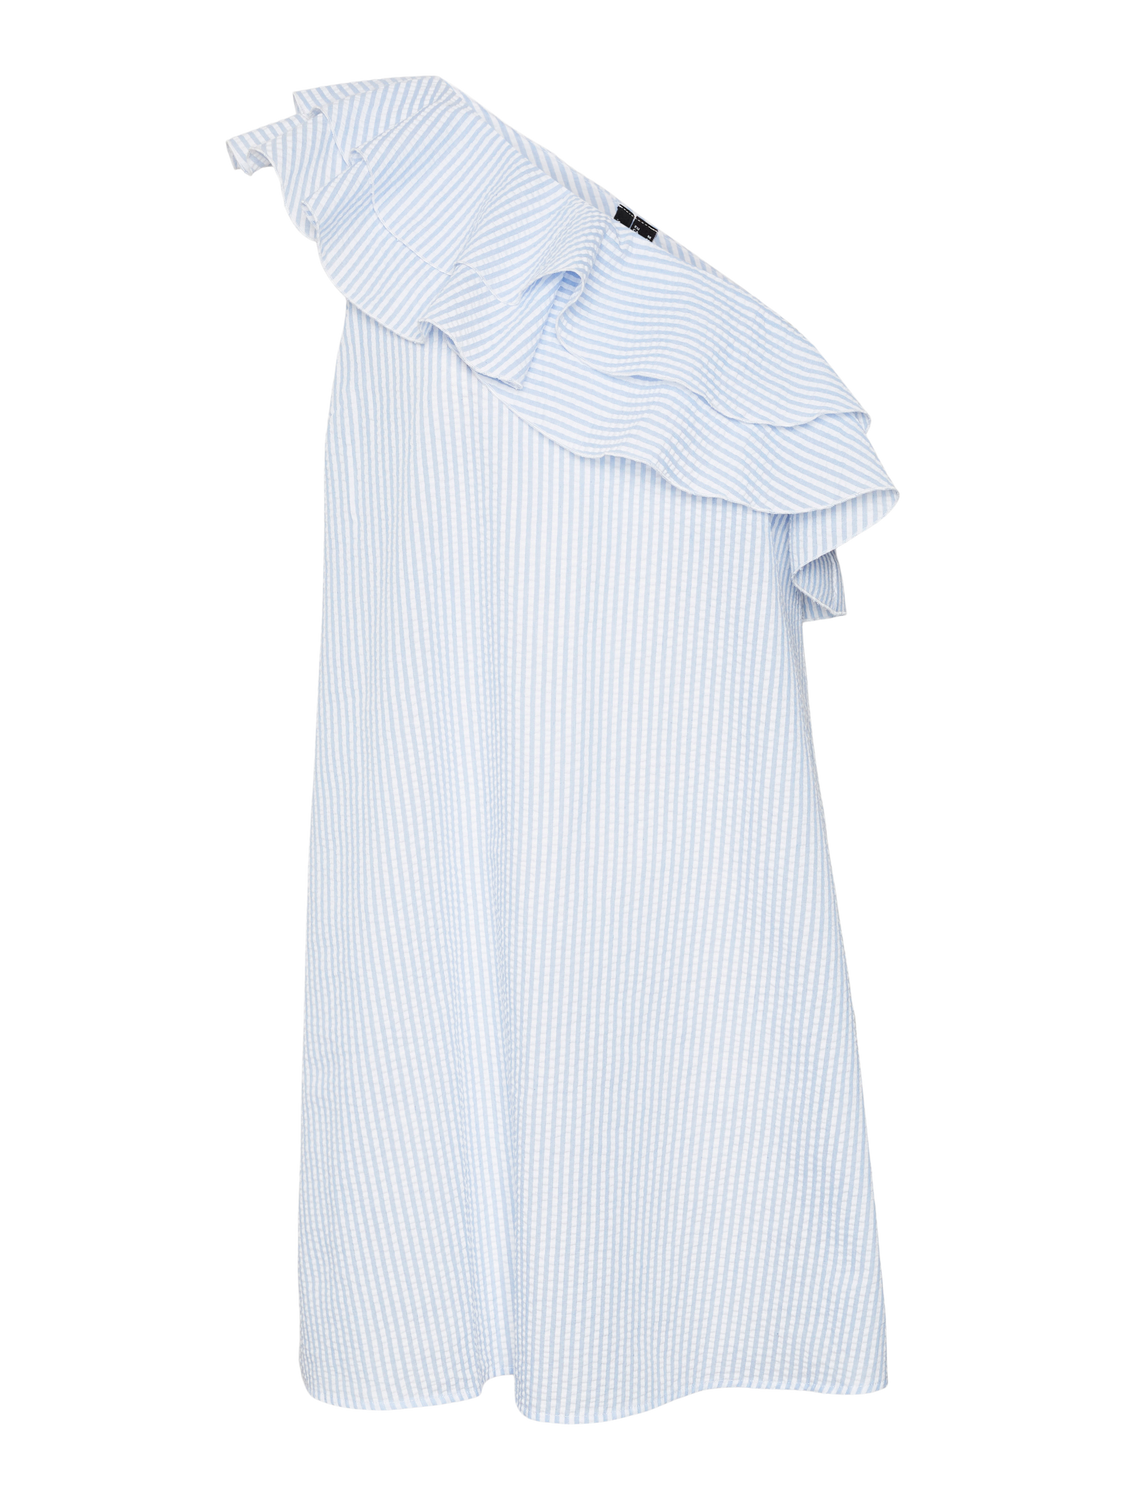 Vero Moda VMMILLIE Vestido corto -Bright White - 10320356